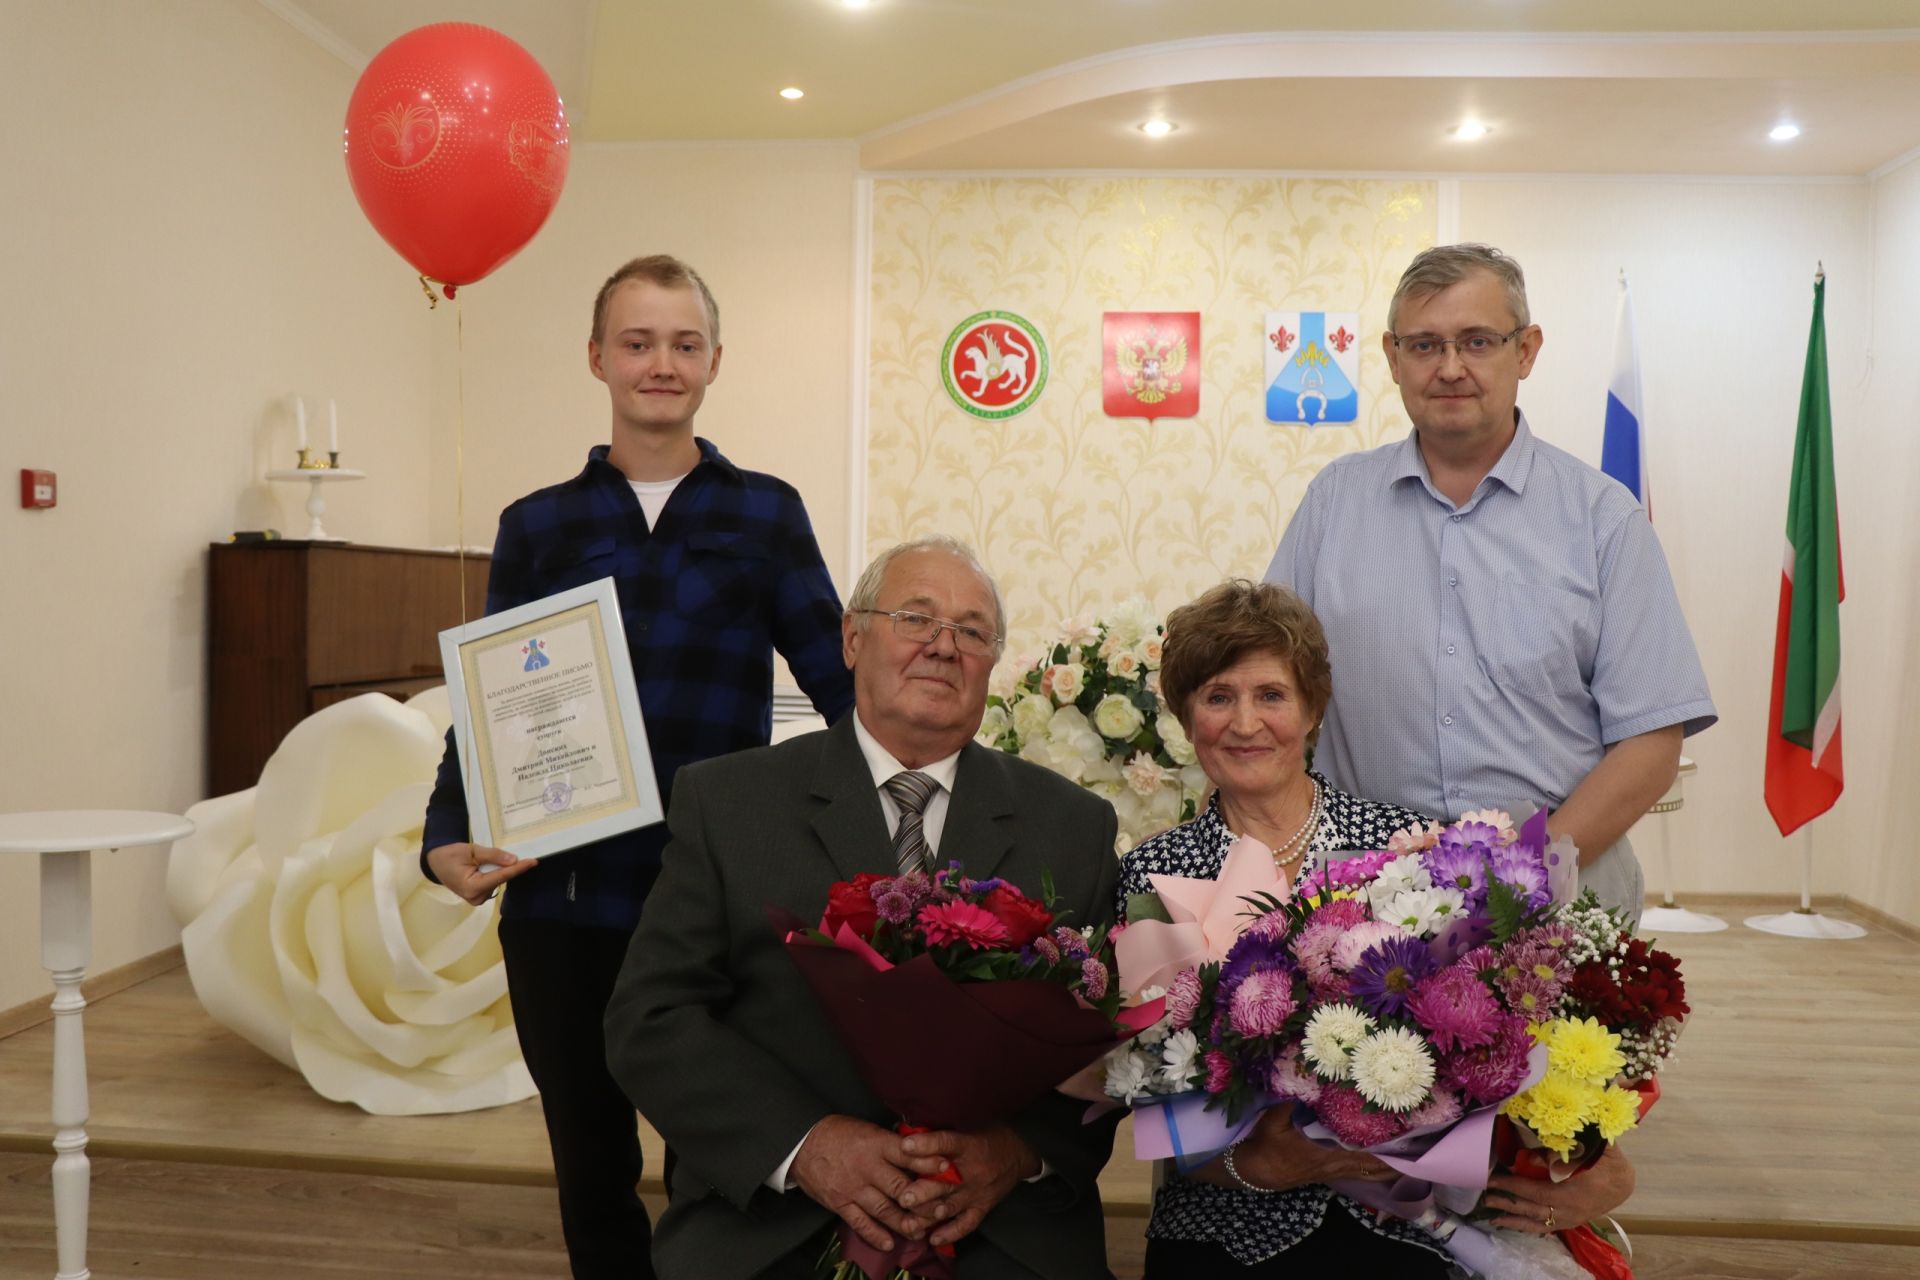 Супруги Донские вновь вошли в ЗАГС после 50 лет совместной жизни